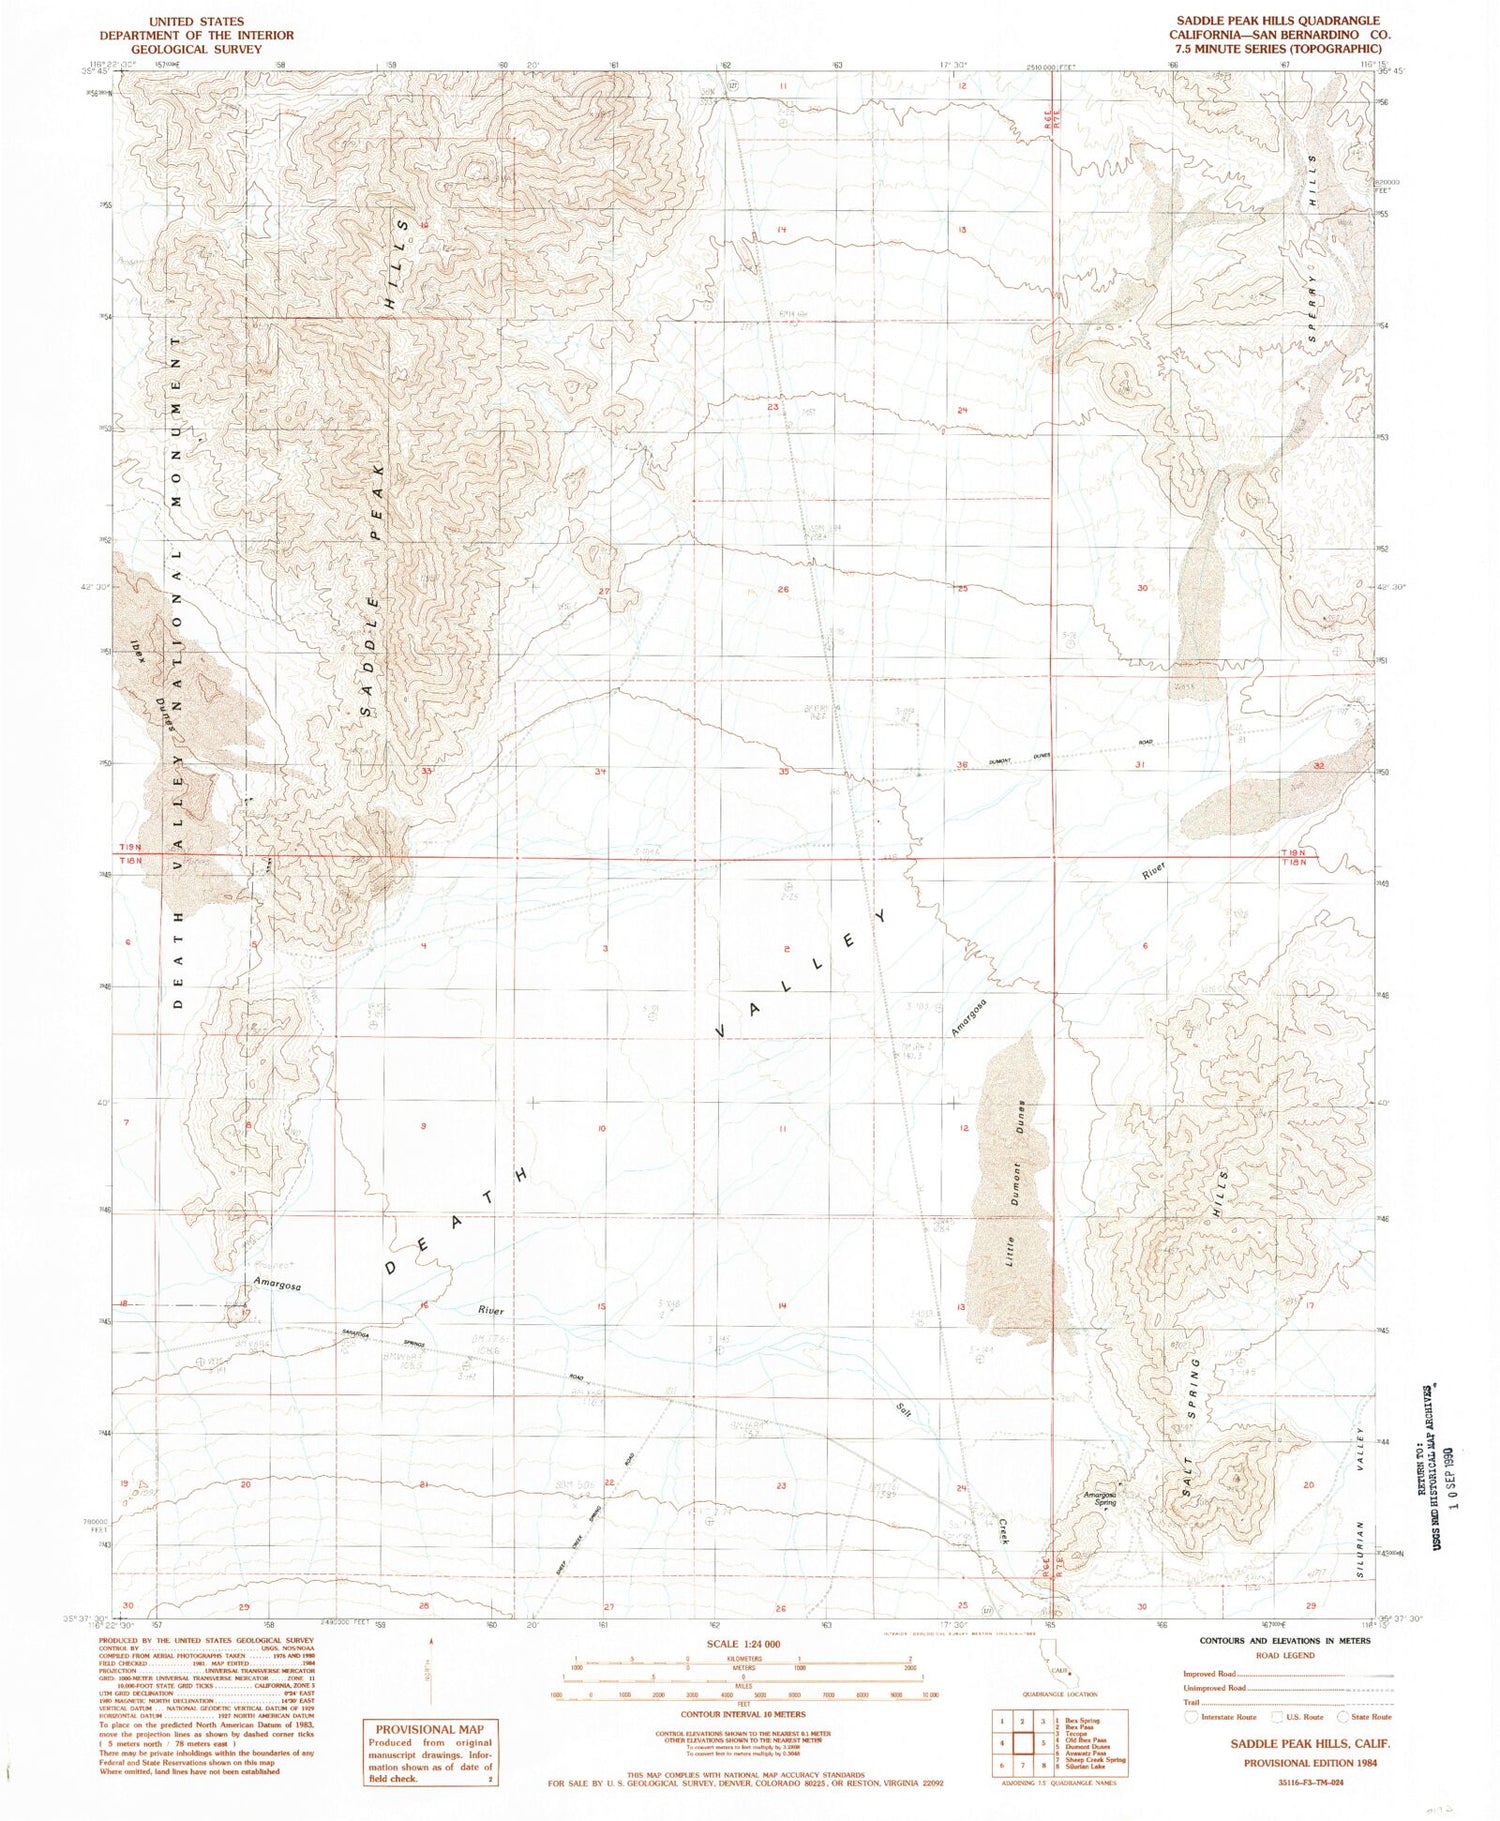 Classic USGS Saddle Peak Hills California 7.5'x7.5' Topo Map Image